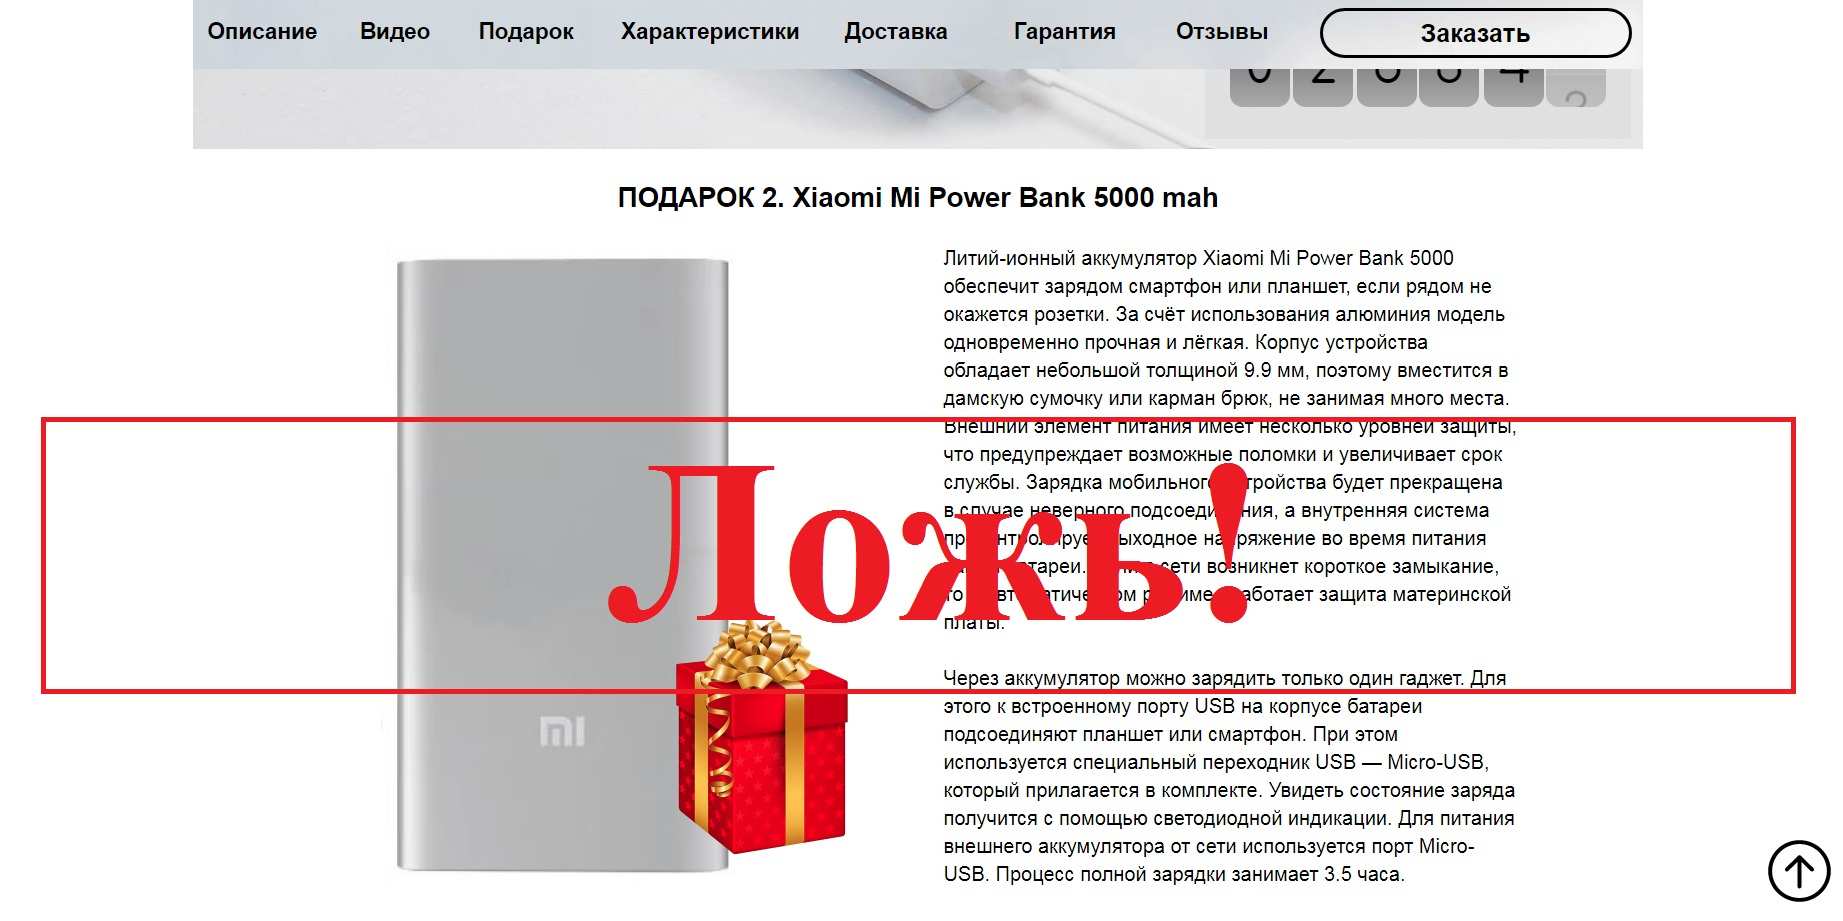 Мини-ноутбук GPD Pocket 2 – отзывы покупателей